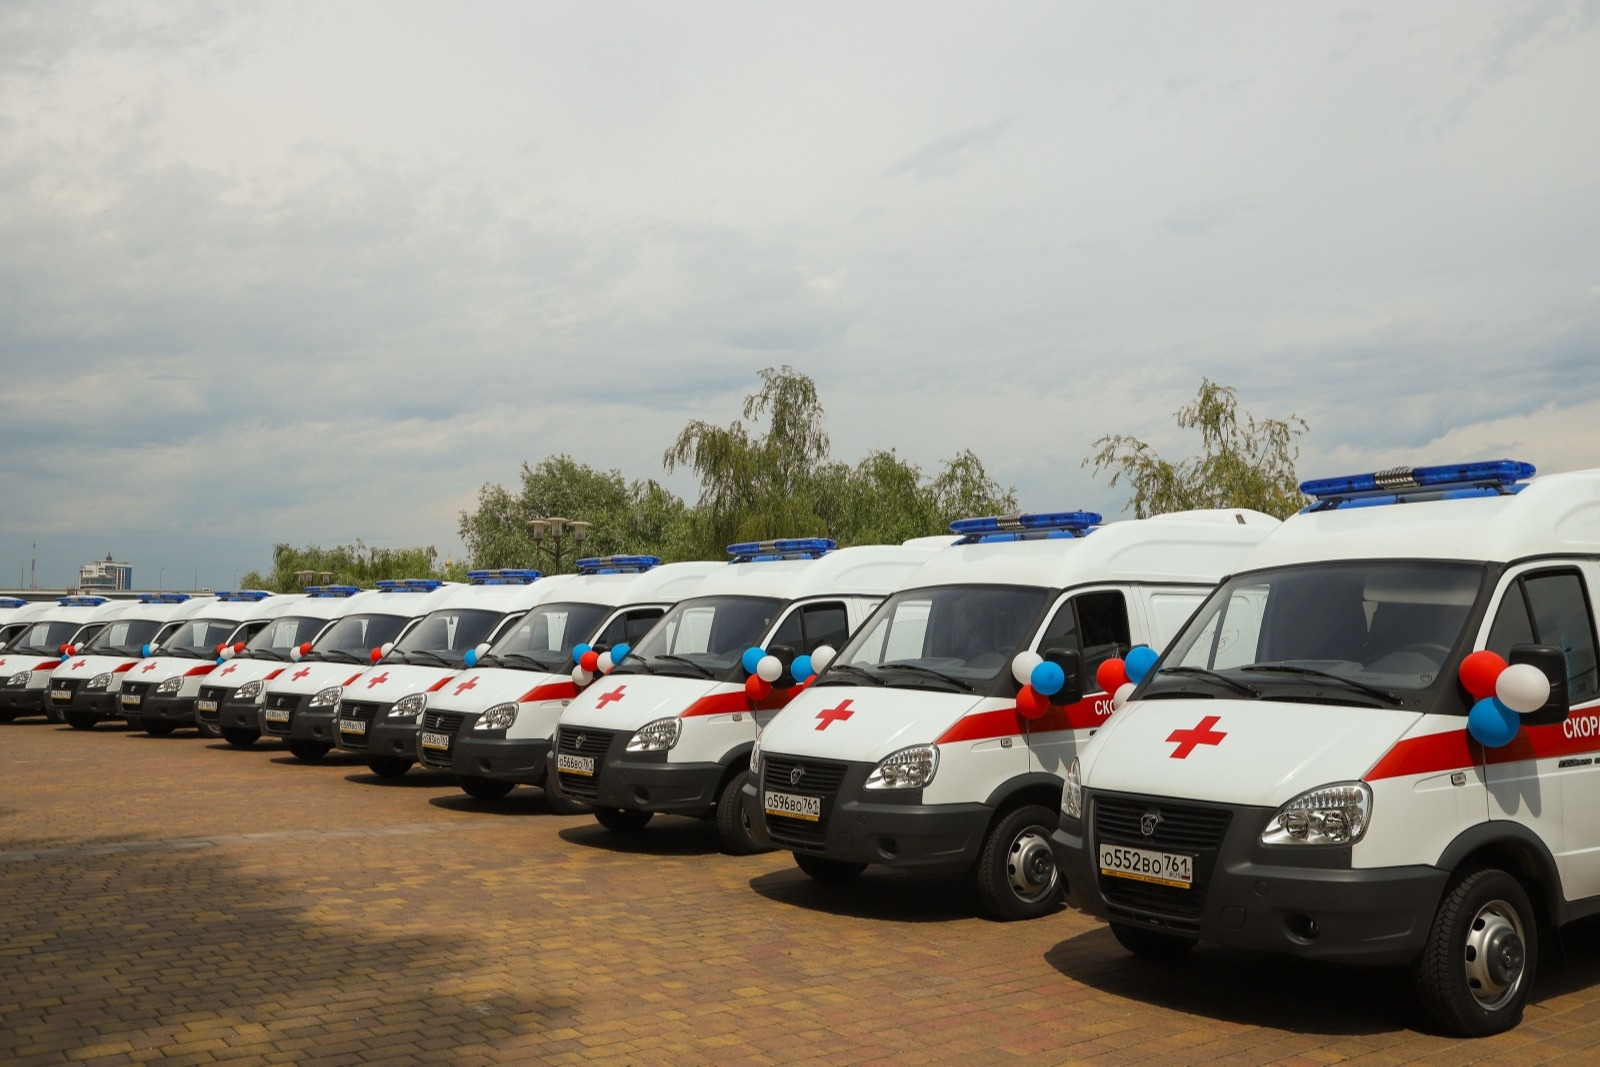 Порядка 52 млн рублей направлено на обновление автопарка "скорой помощи" Ростова-на-Дону в 2021 году